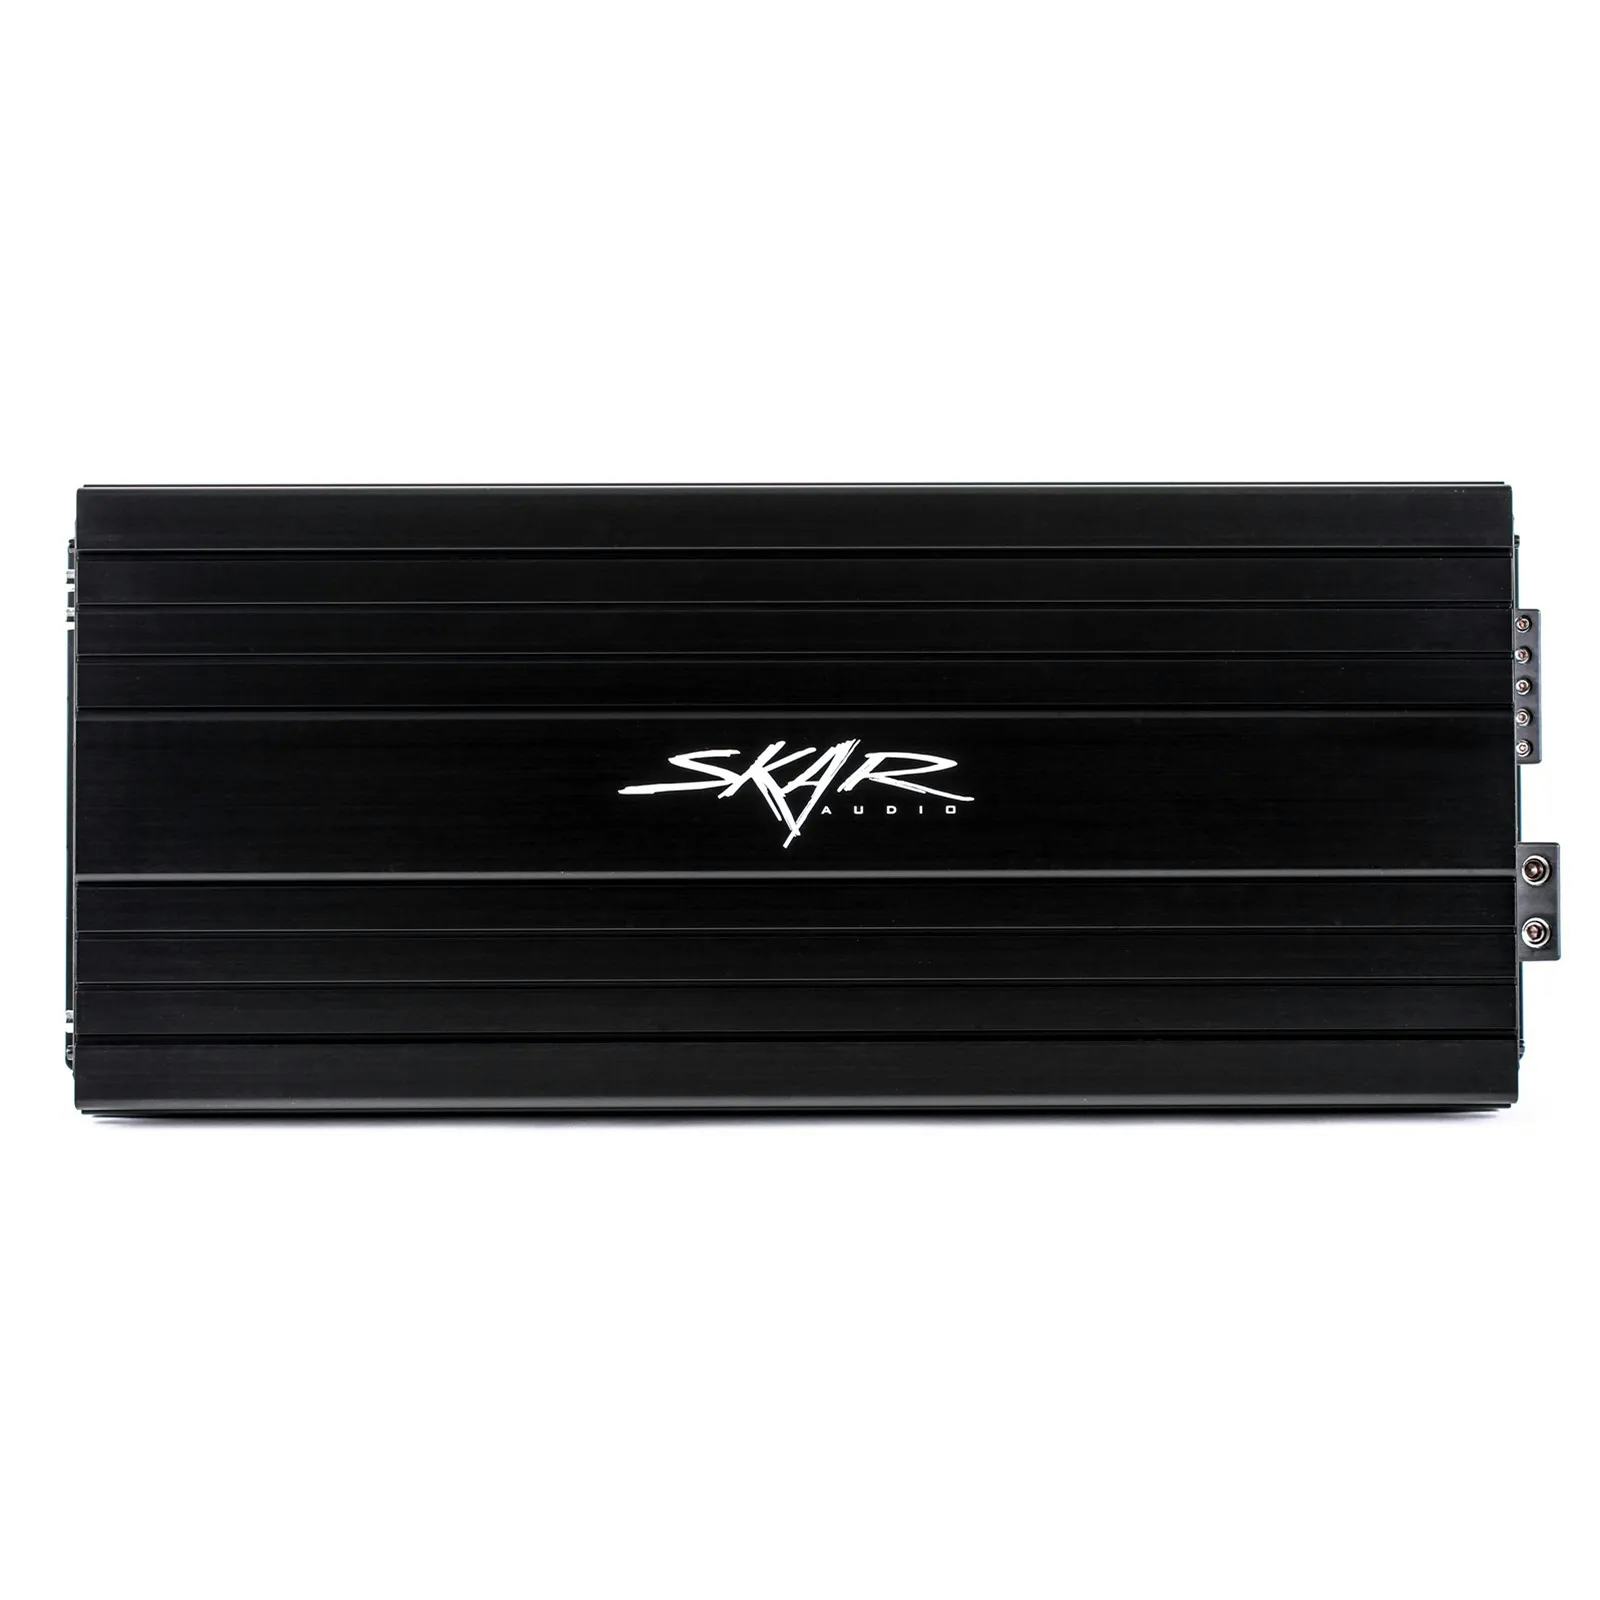 SKv2-2500.1D | 2,500 Watt Monoblock Car Amplifier #1